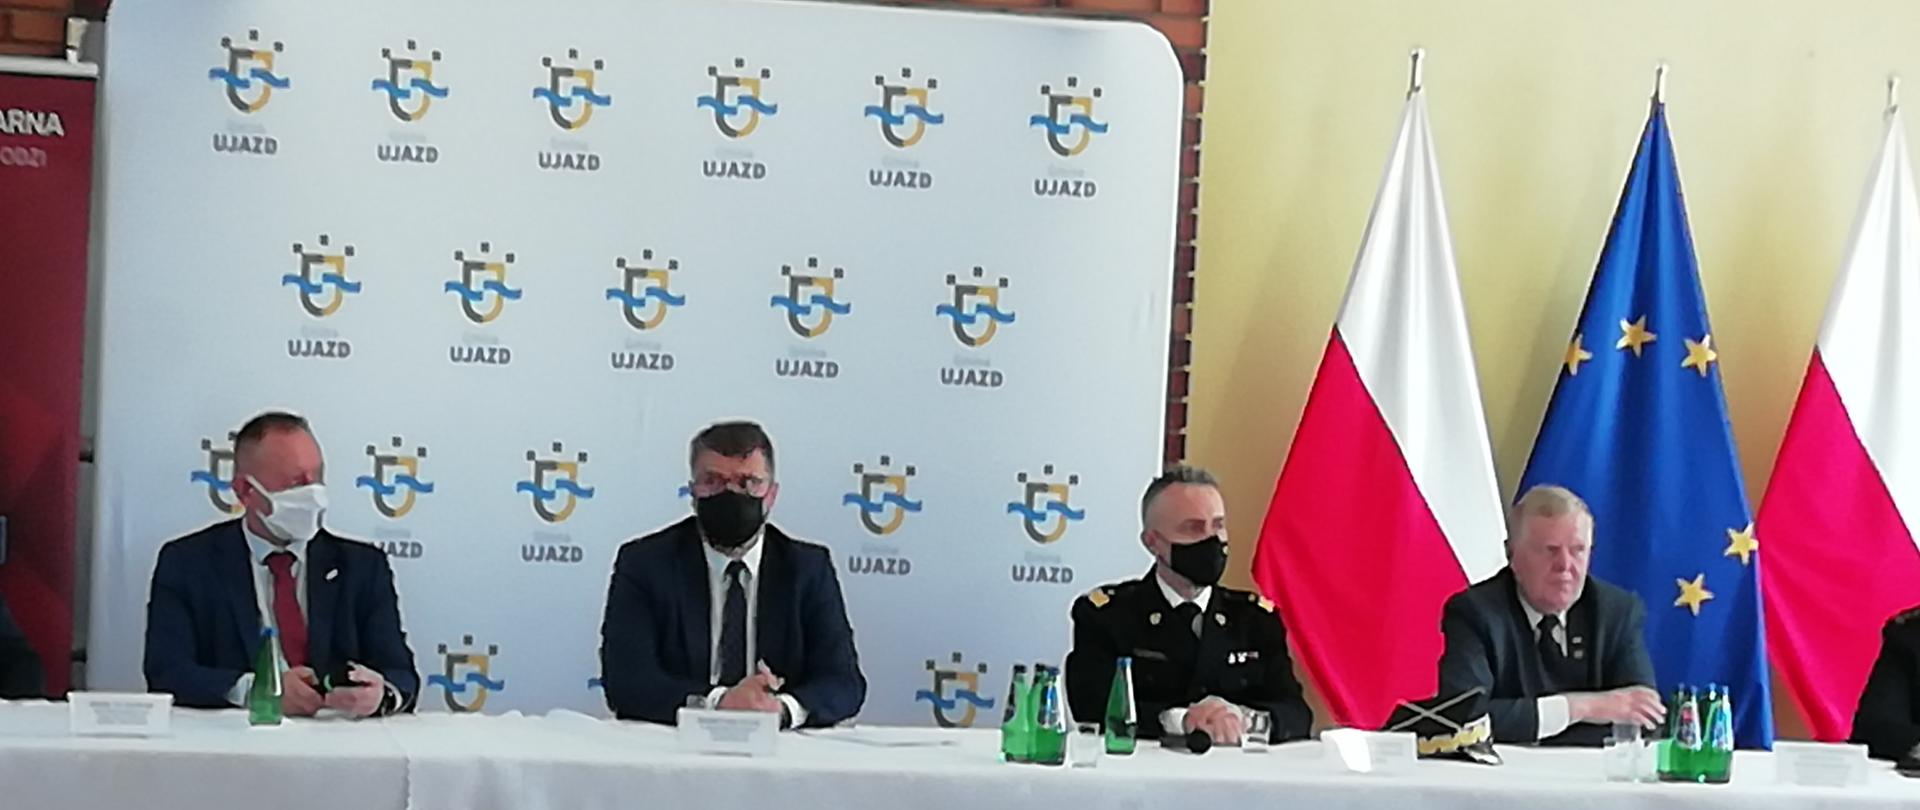 Czterech mężczyzn siedzi przy stole który przykryty jest białym obrusem. Jeden to strażak. Za siedzącymi w centralnej części znajduje się baner z logo Gminy Ujazd a po prawej stronie trzy flagi. Dwie skrajne to flagi biało-czerwone natomiast środkowa to flaga Unii Europejskiej. 